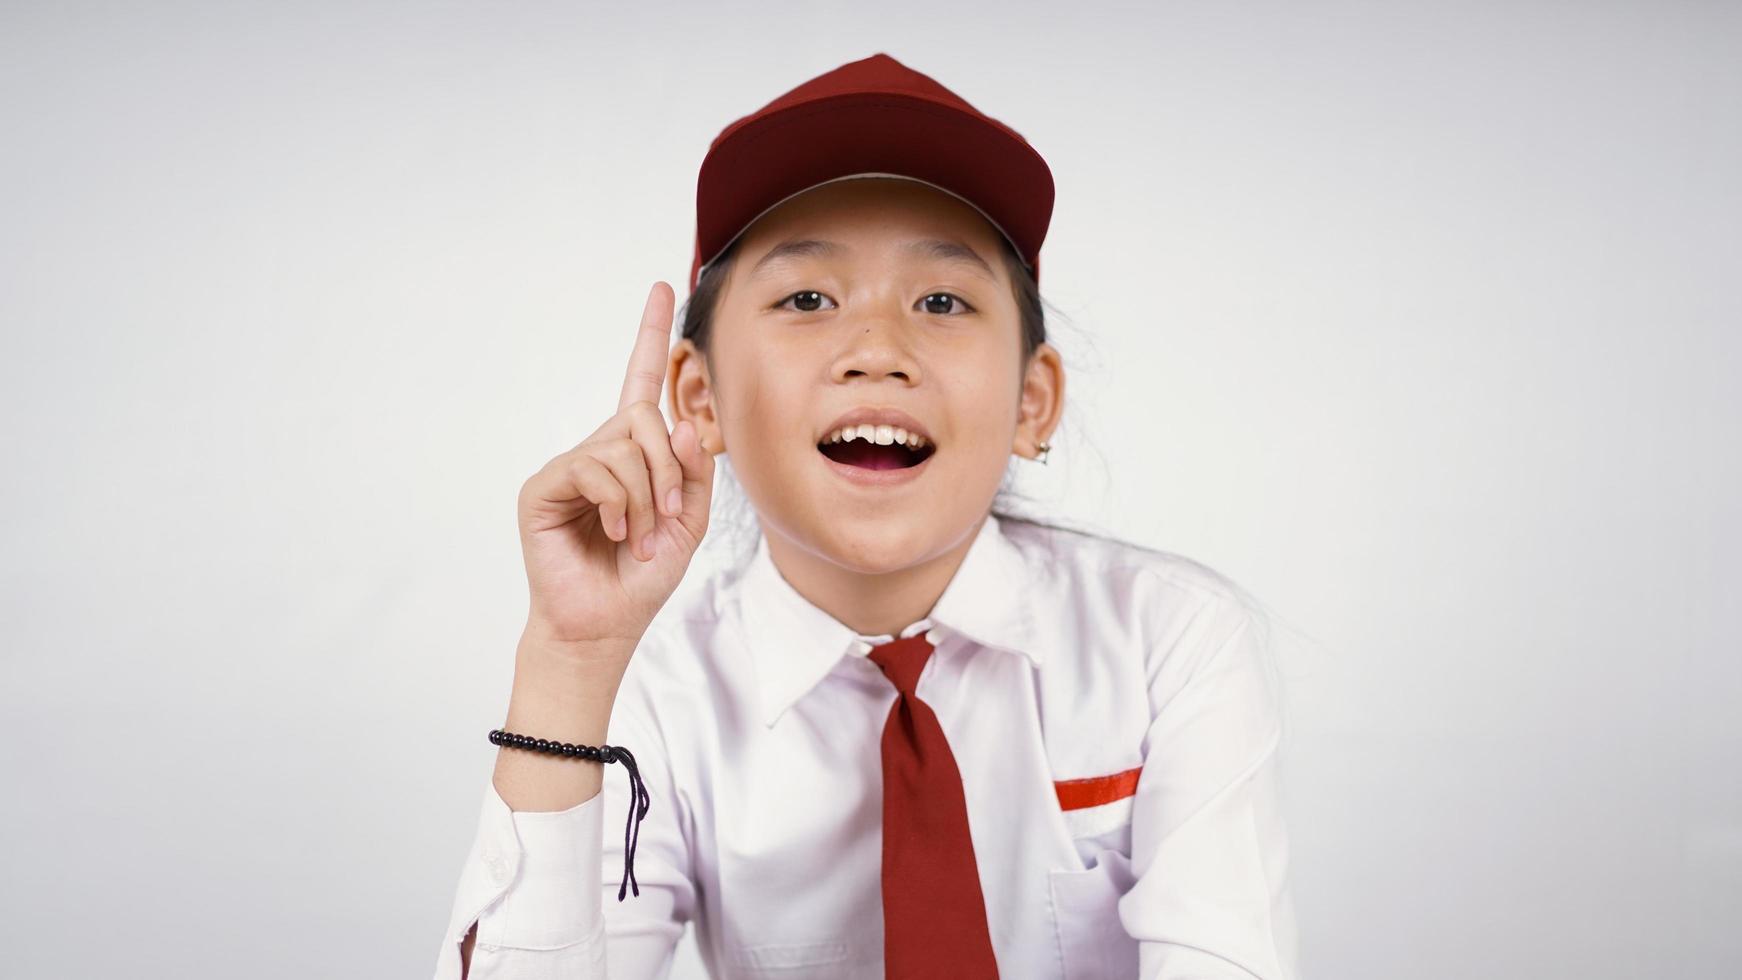 Grundschule asiatisches Mädchen findet interessante Idee isoliert auf weißem Hintergrund foto